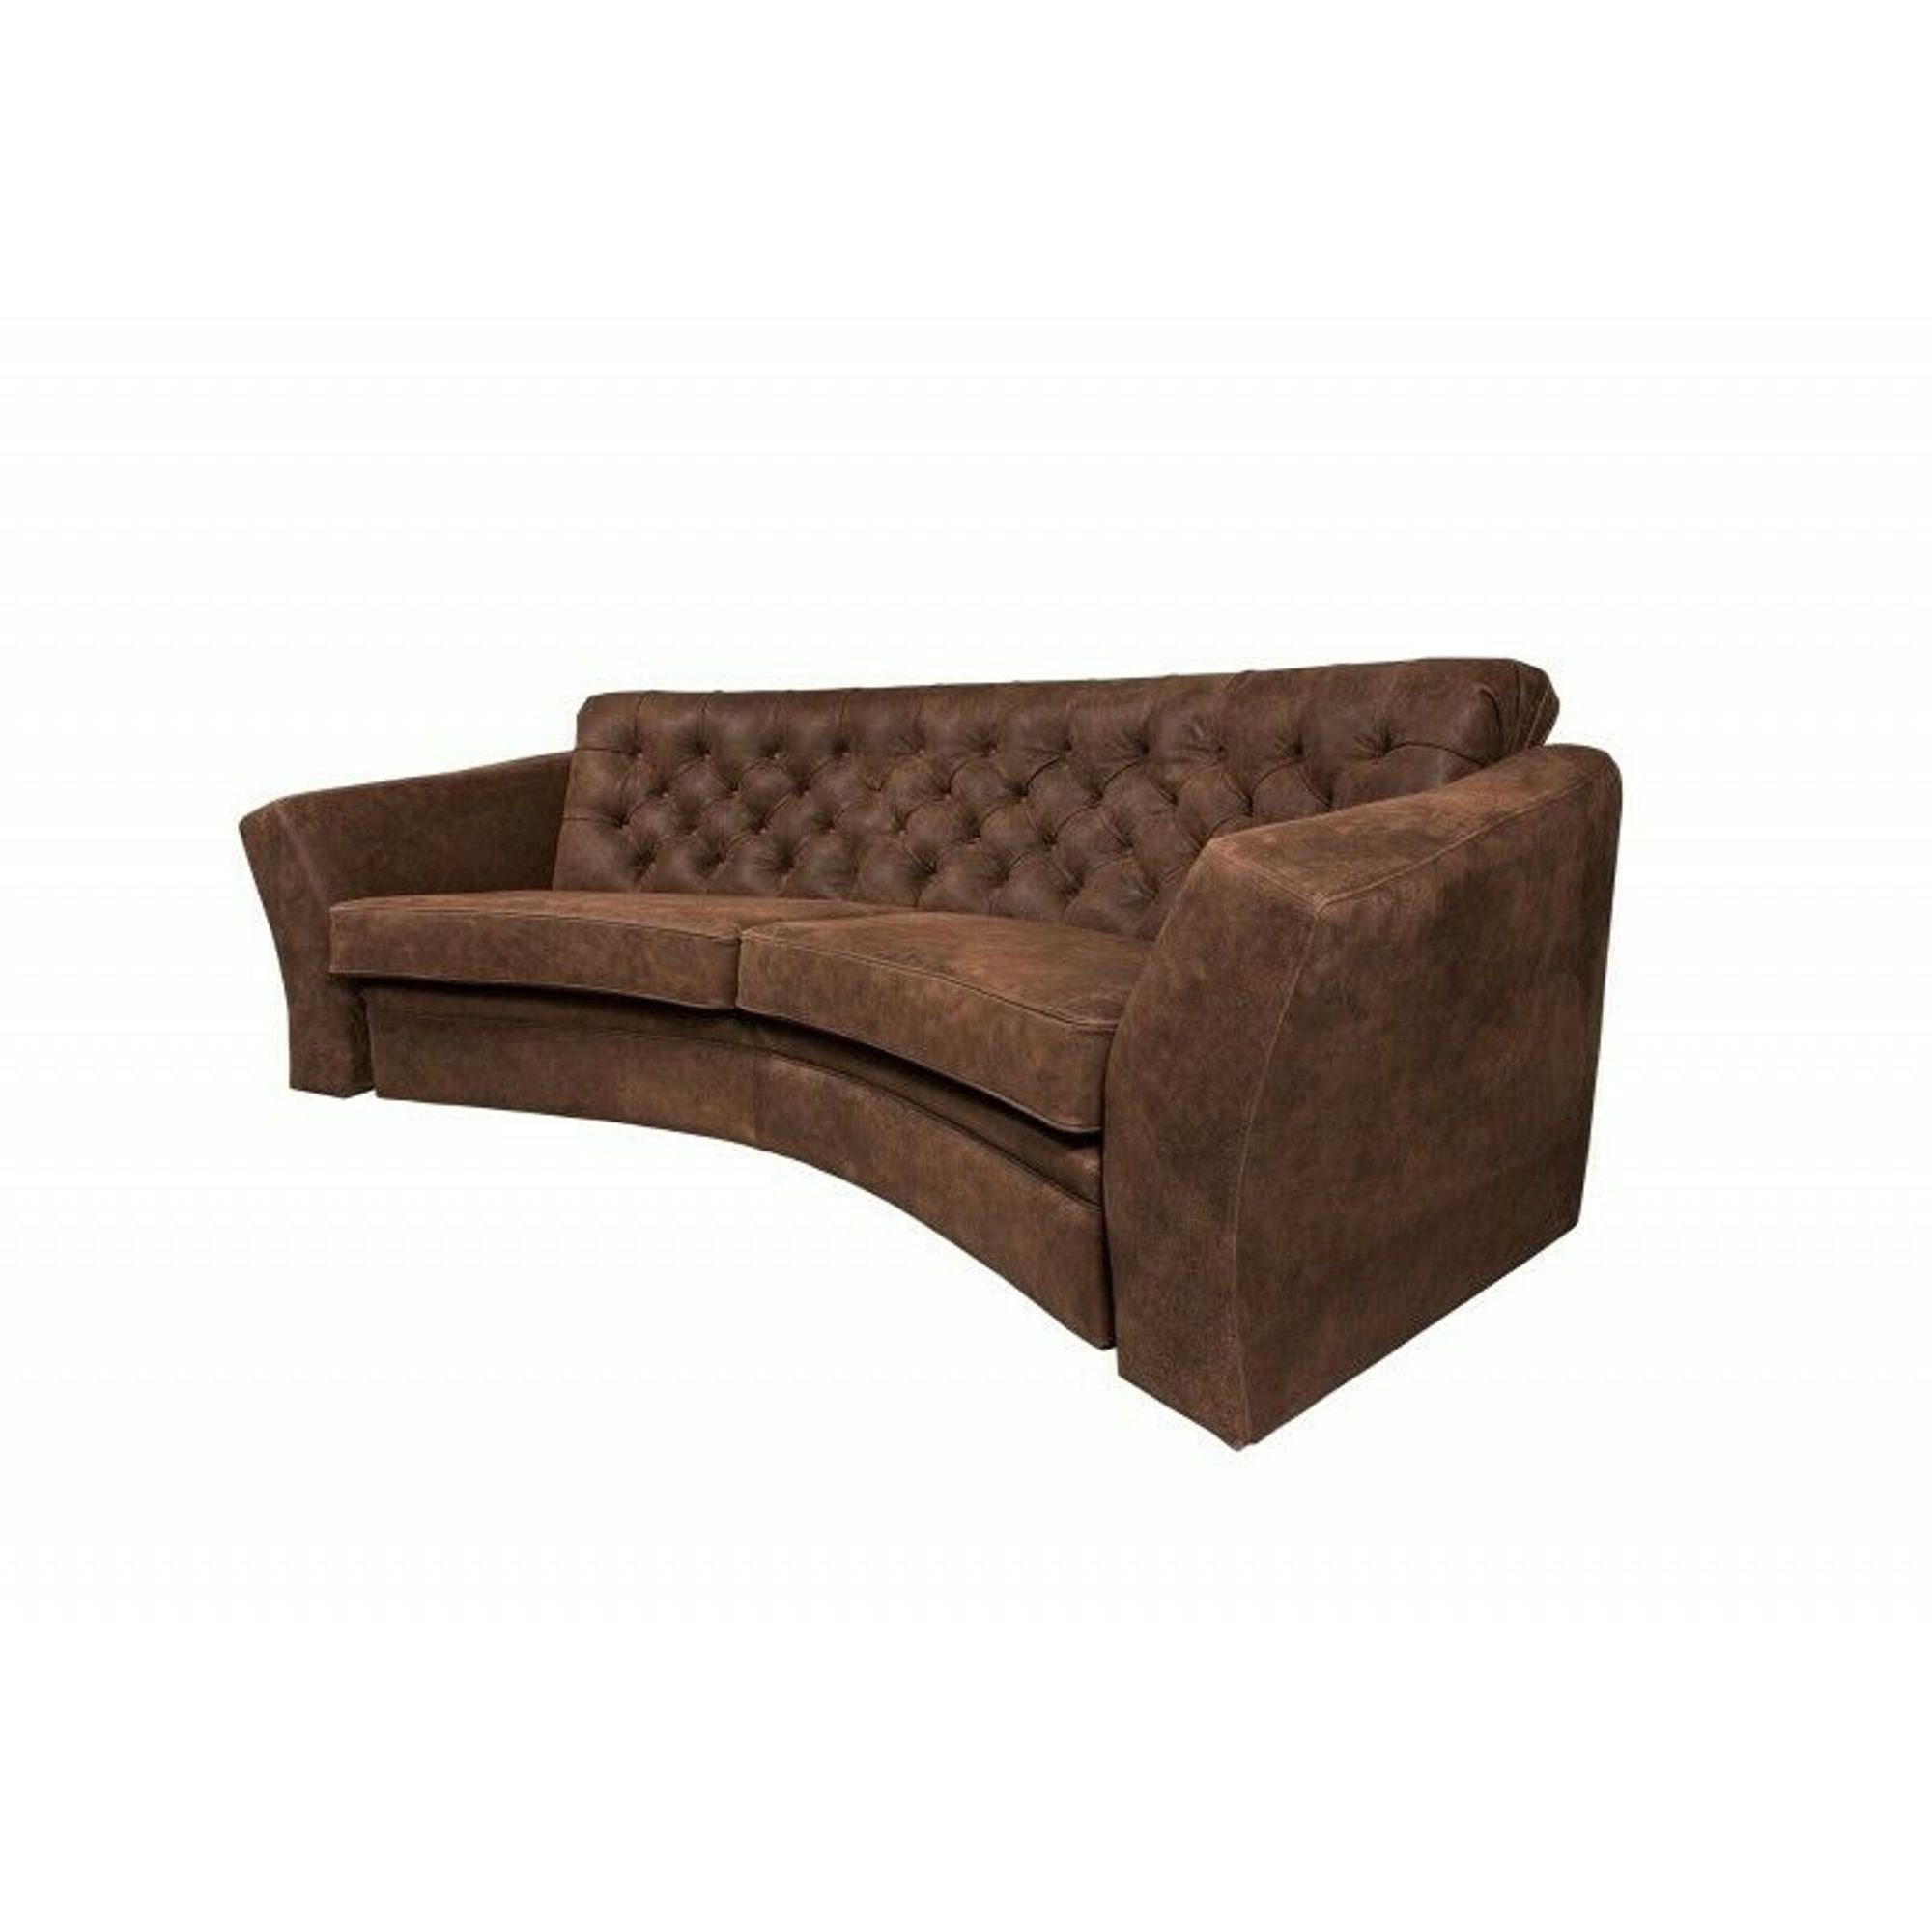 Sofa Grauer Made Polstermöbel in Braun Dreisitzer JVmoebel Luxus Sofa Halbrundes Europe Chesterfield,